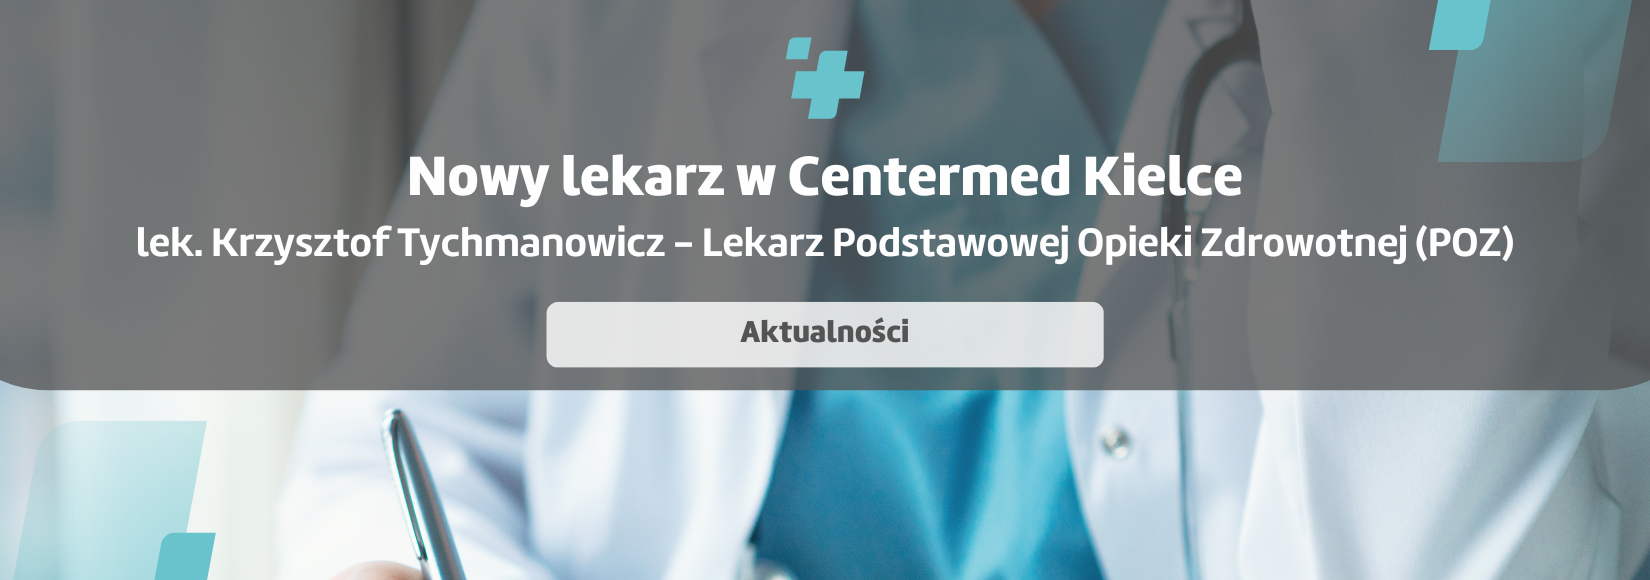 Nowy lekarz POZ w CenterMed Kielce - lek. Krzysztof Tychmanowicz